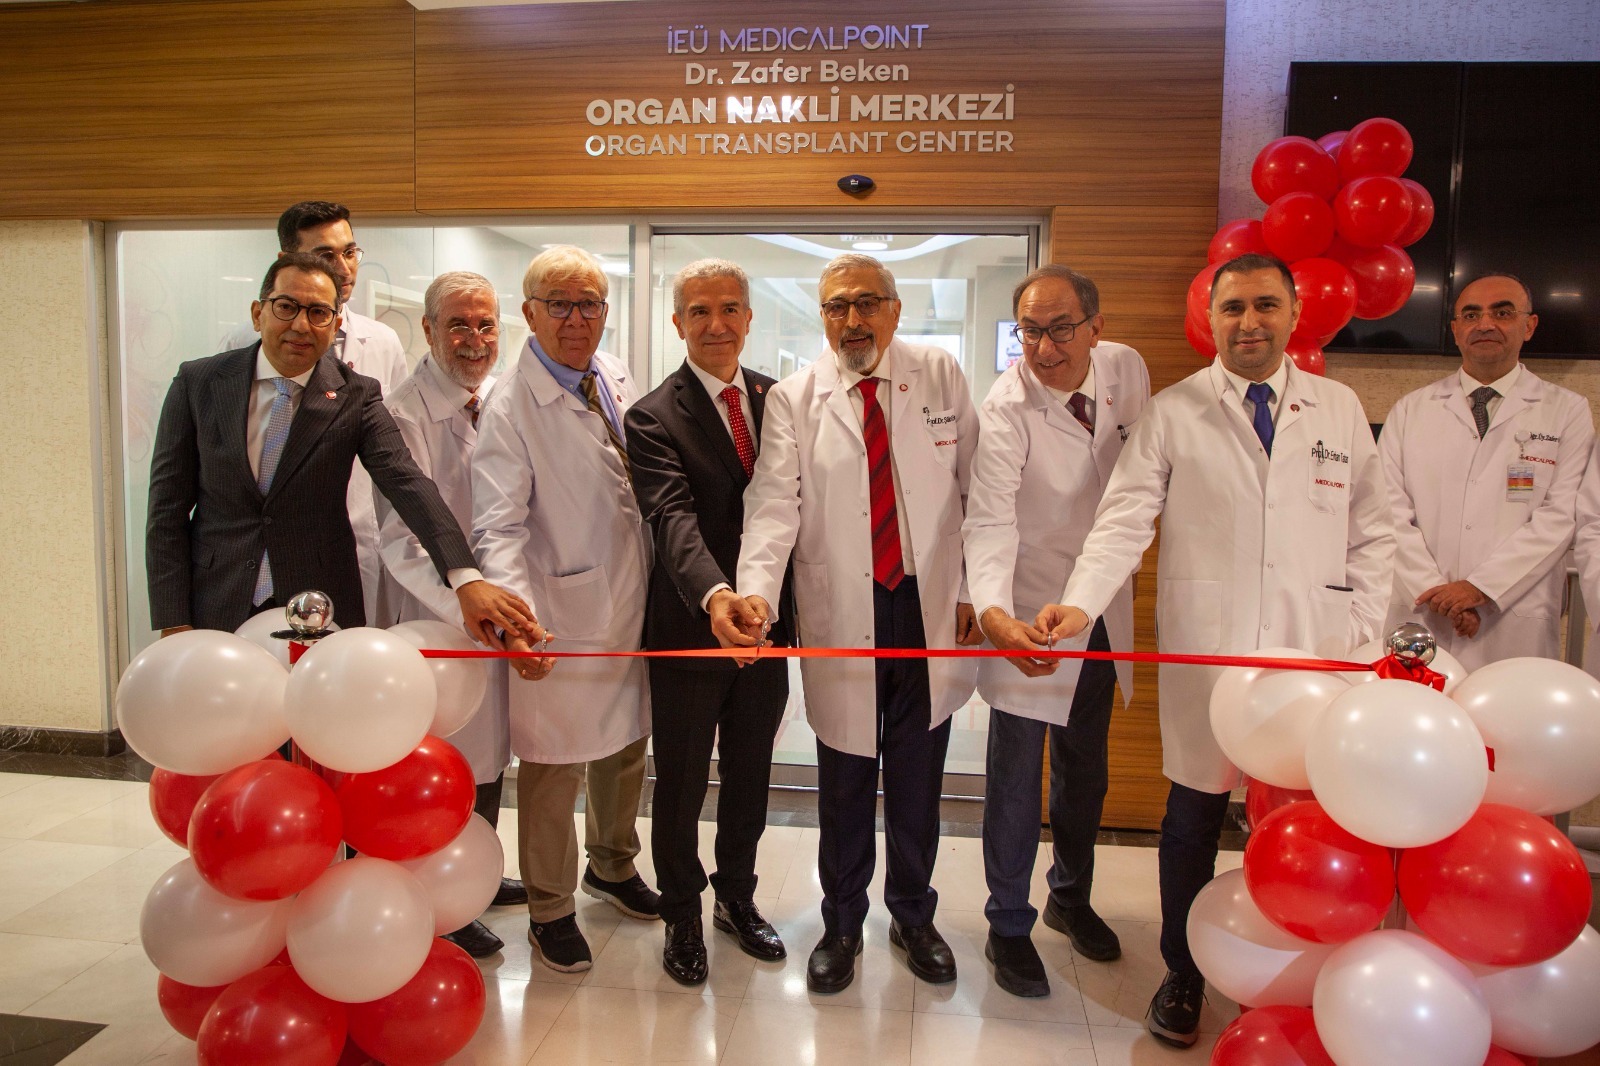 MEDİCAL POİNT HASTANESİ ‘Dr. Zafer Beken Organ Nakli Merkezi’nin de açılışı gerçekleştirildi.